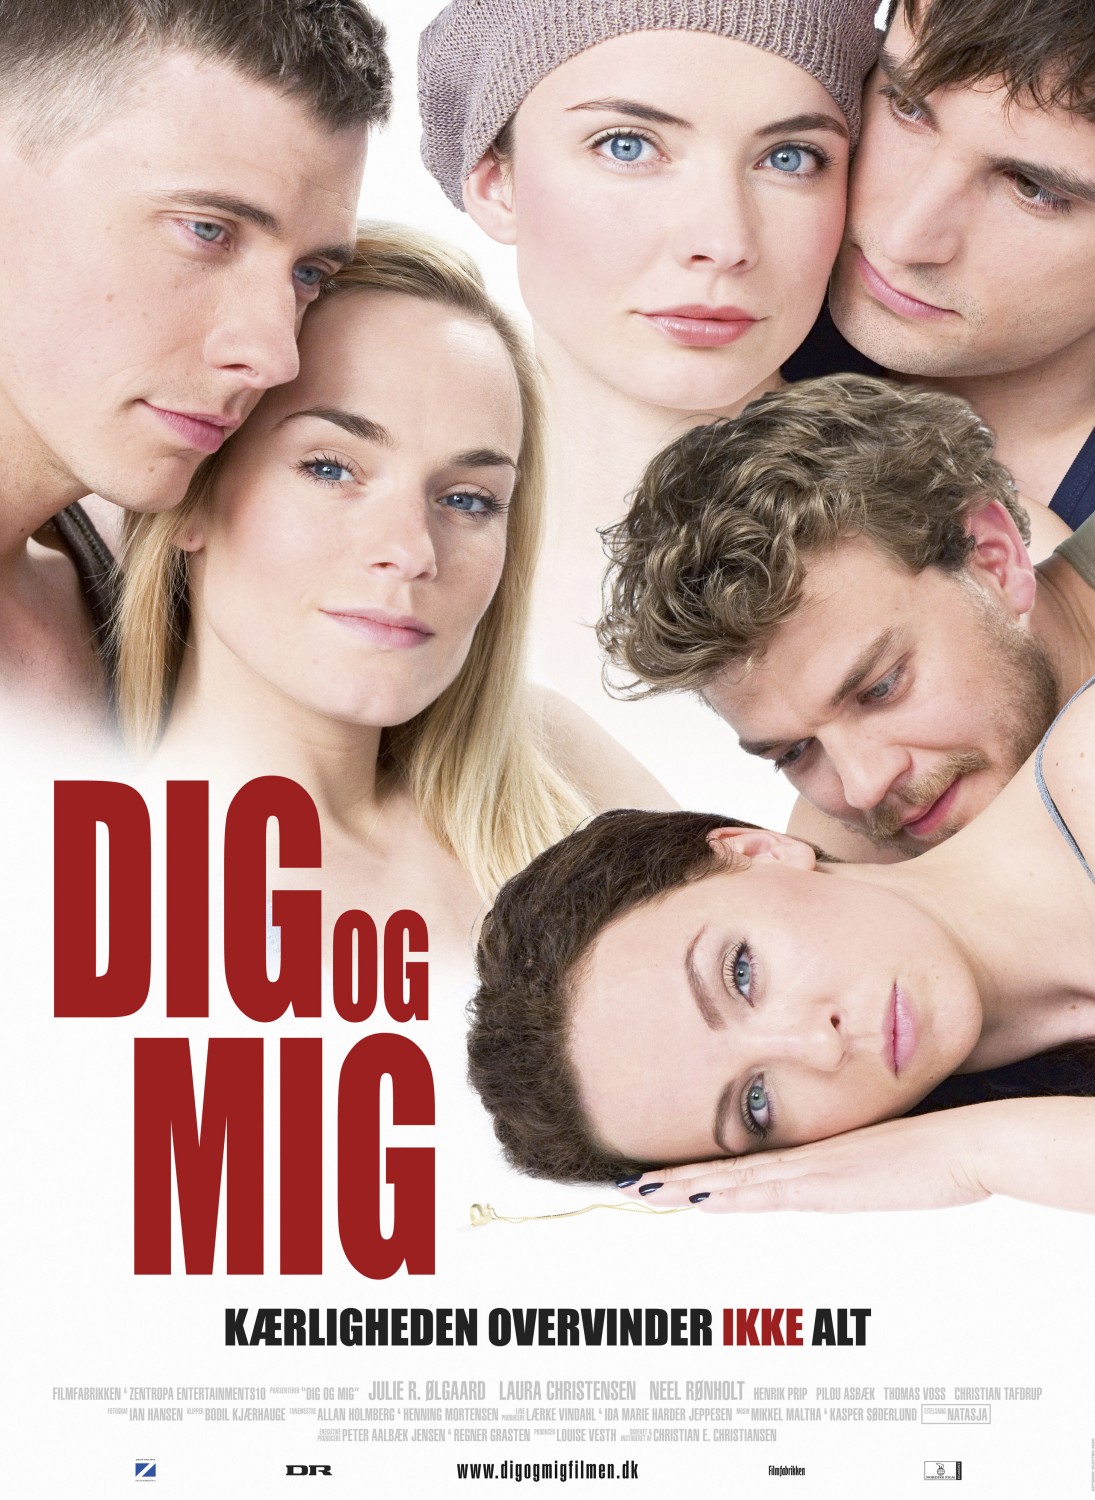 Extra Large Movie Poster Image for Dig og mig (#4 of 4)